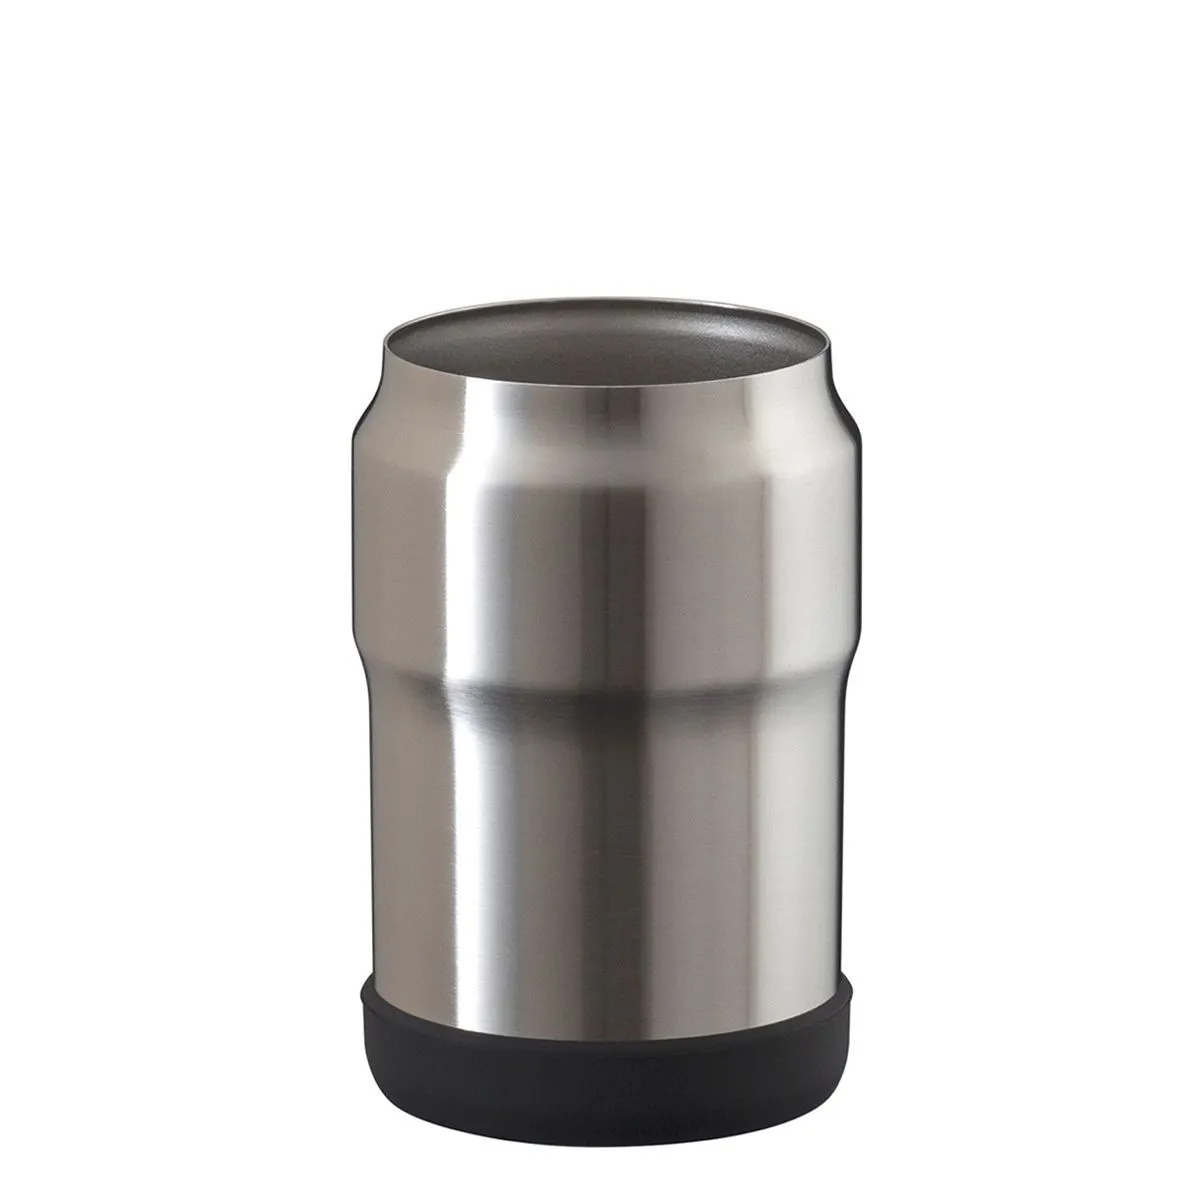 ウェンズ 保冷缶ホルダー 350ml缶用【オリジナルペットボトルホルダー / 回転シルク印刷】 画像1